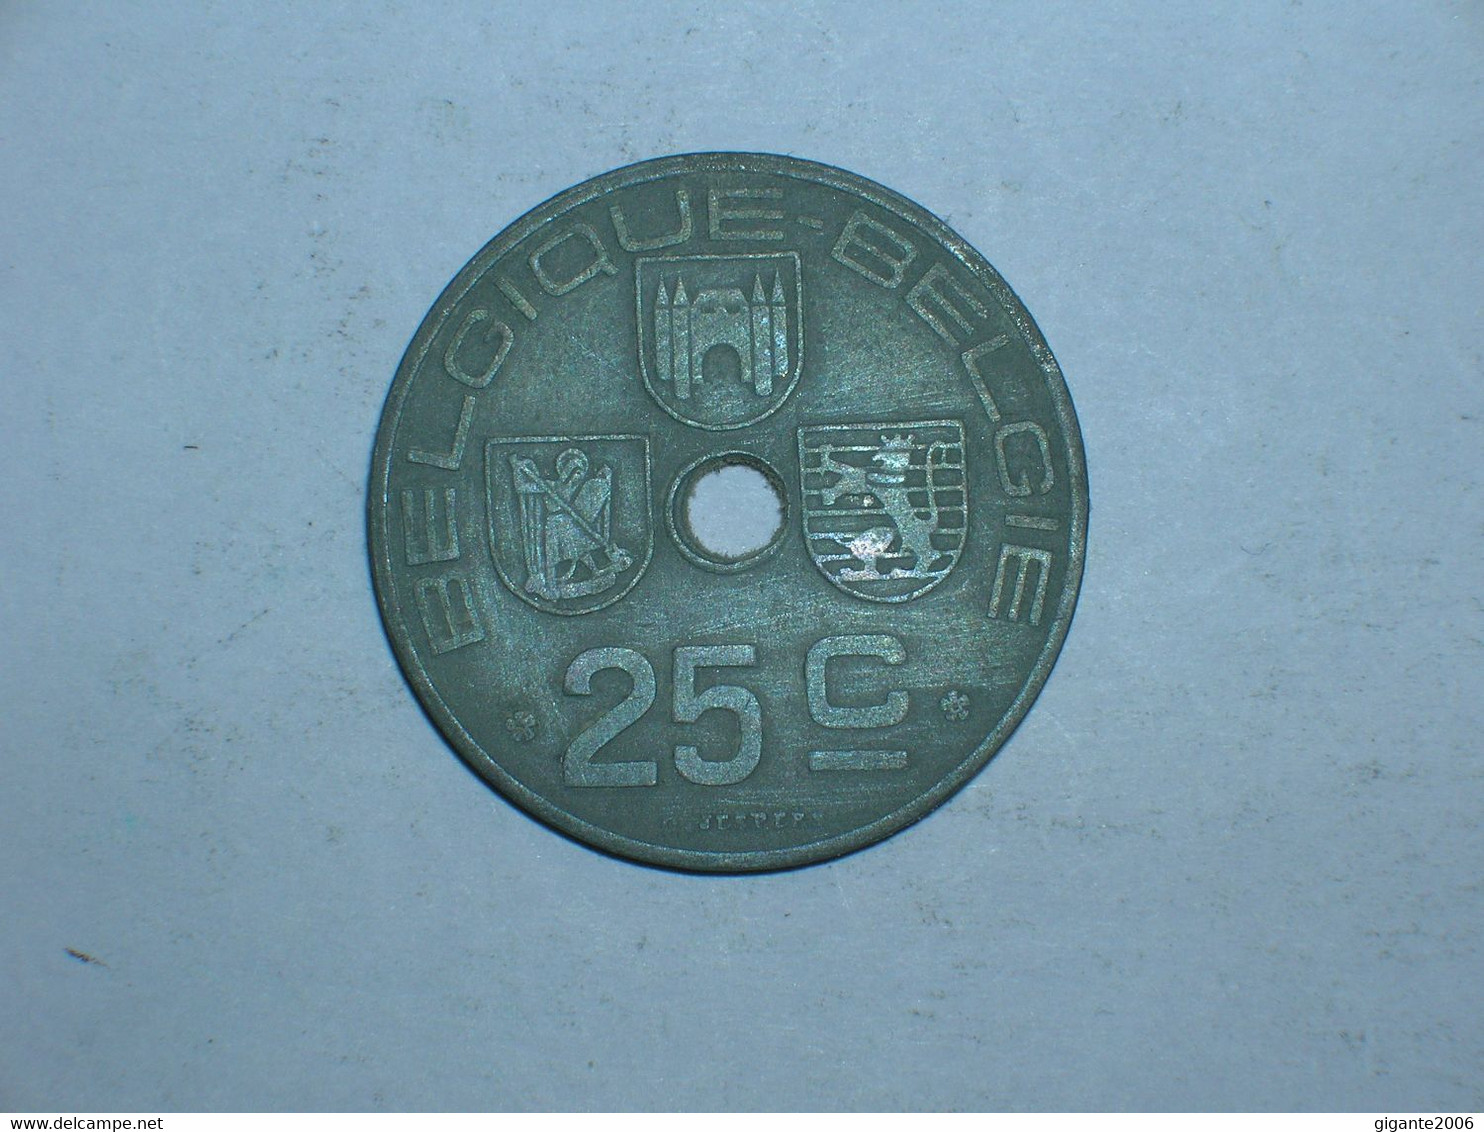 BELGICA 25 CENTIMOS 1946 FR (8981) - 25 Centimos